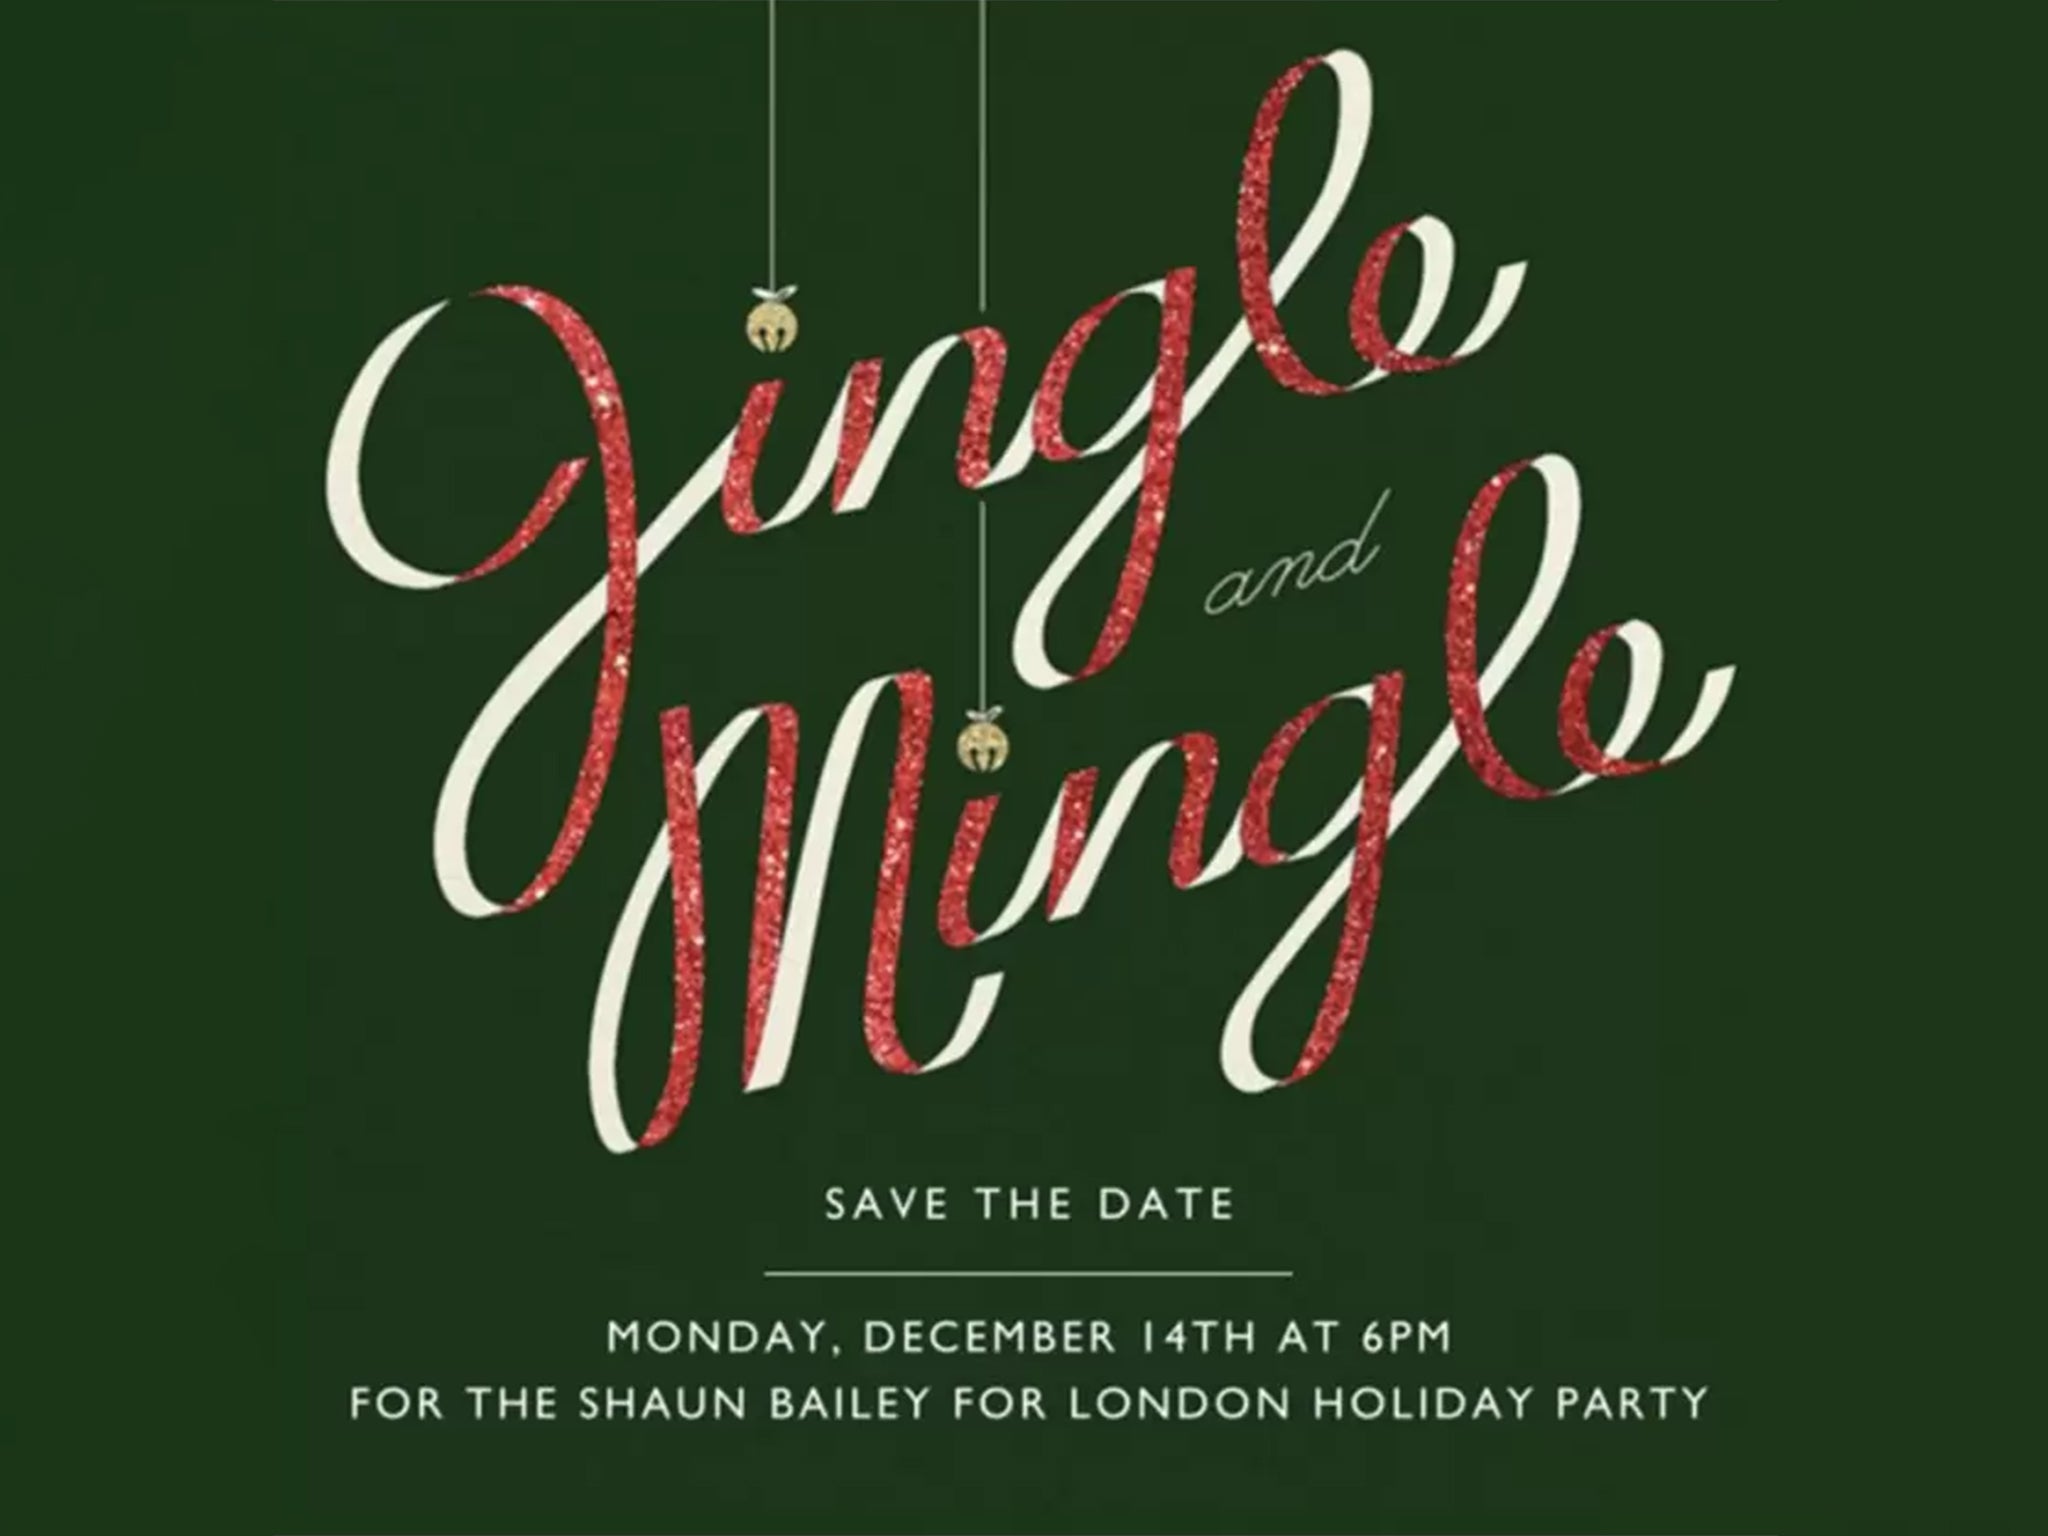 The ‘jingle and mingle’ invite